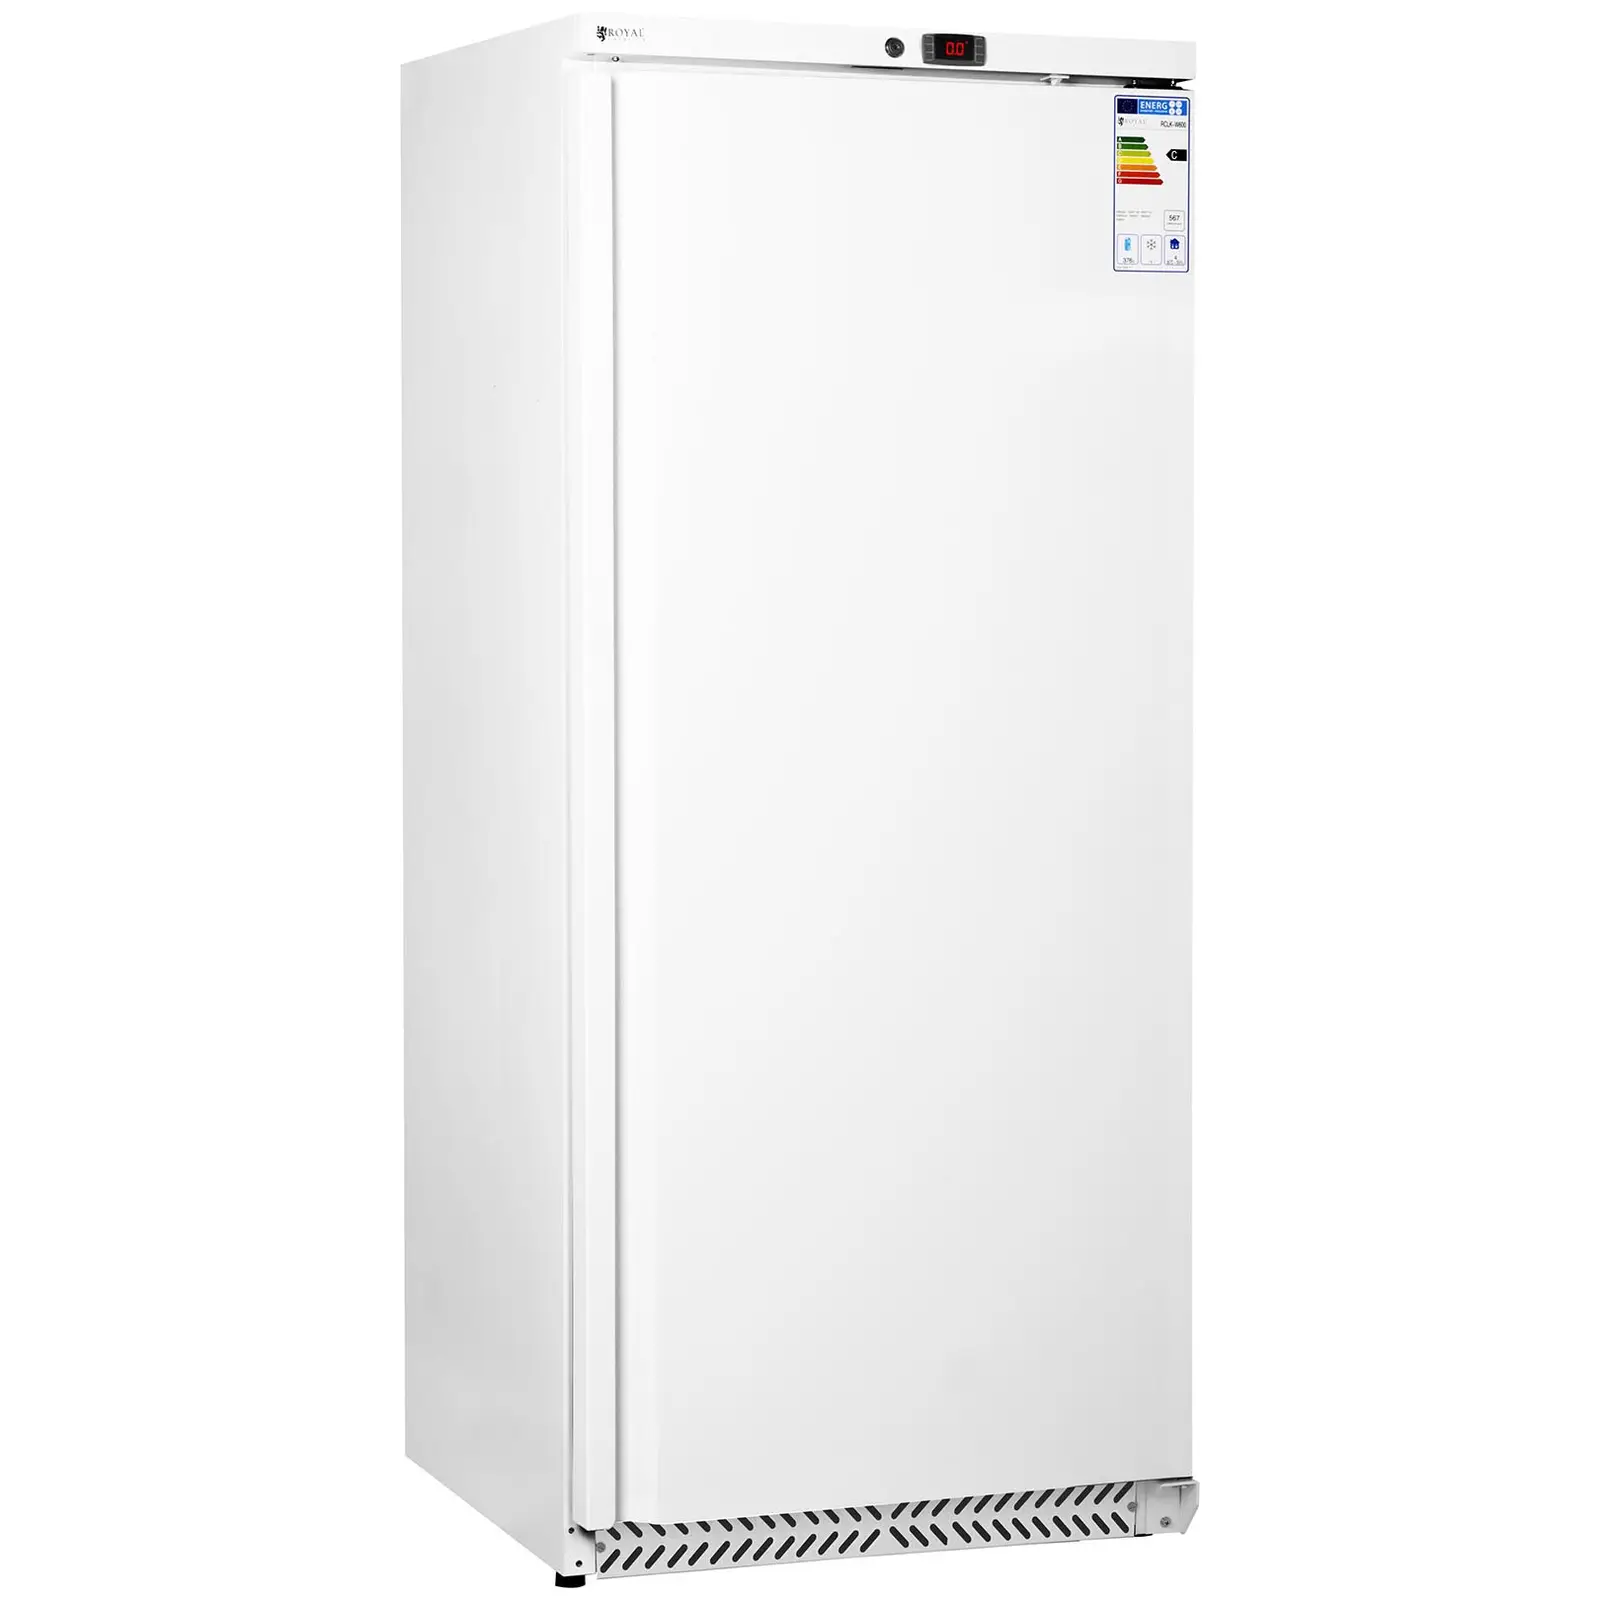 Refrigerador para gastronomía - 590 L